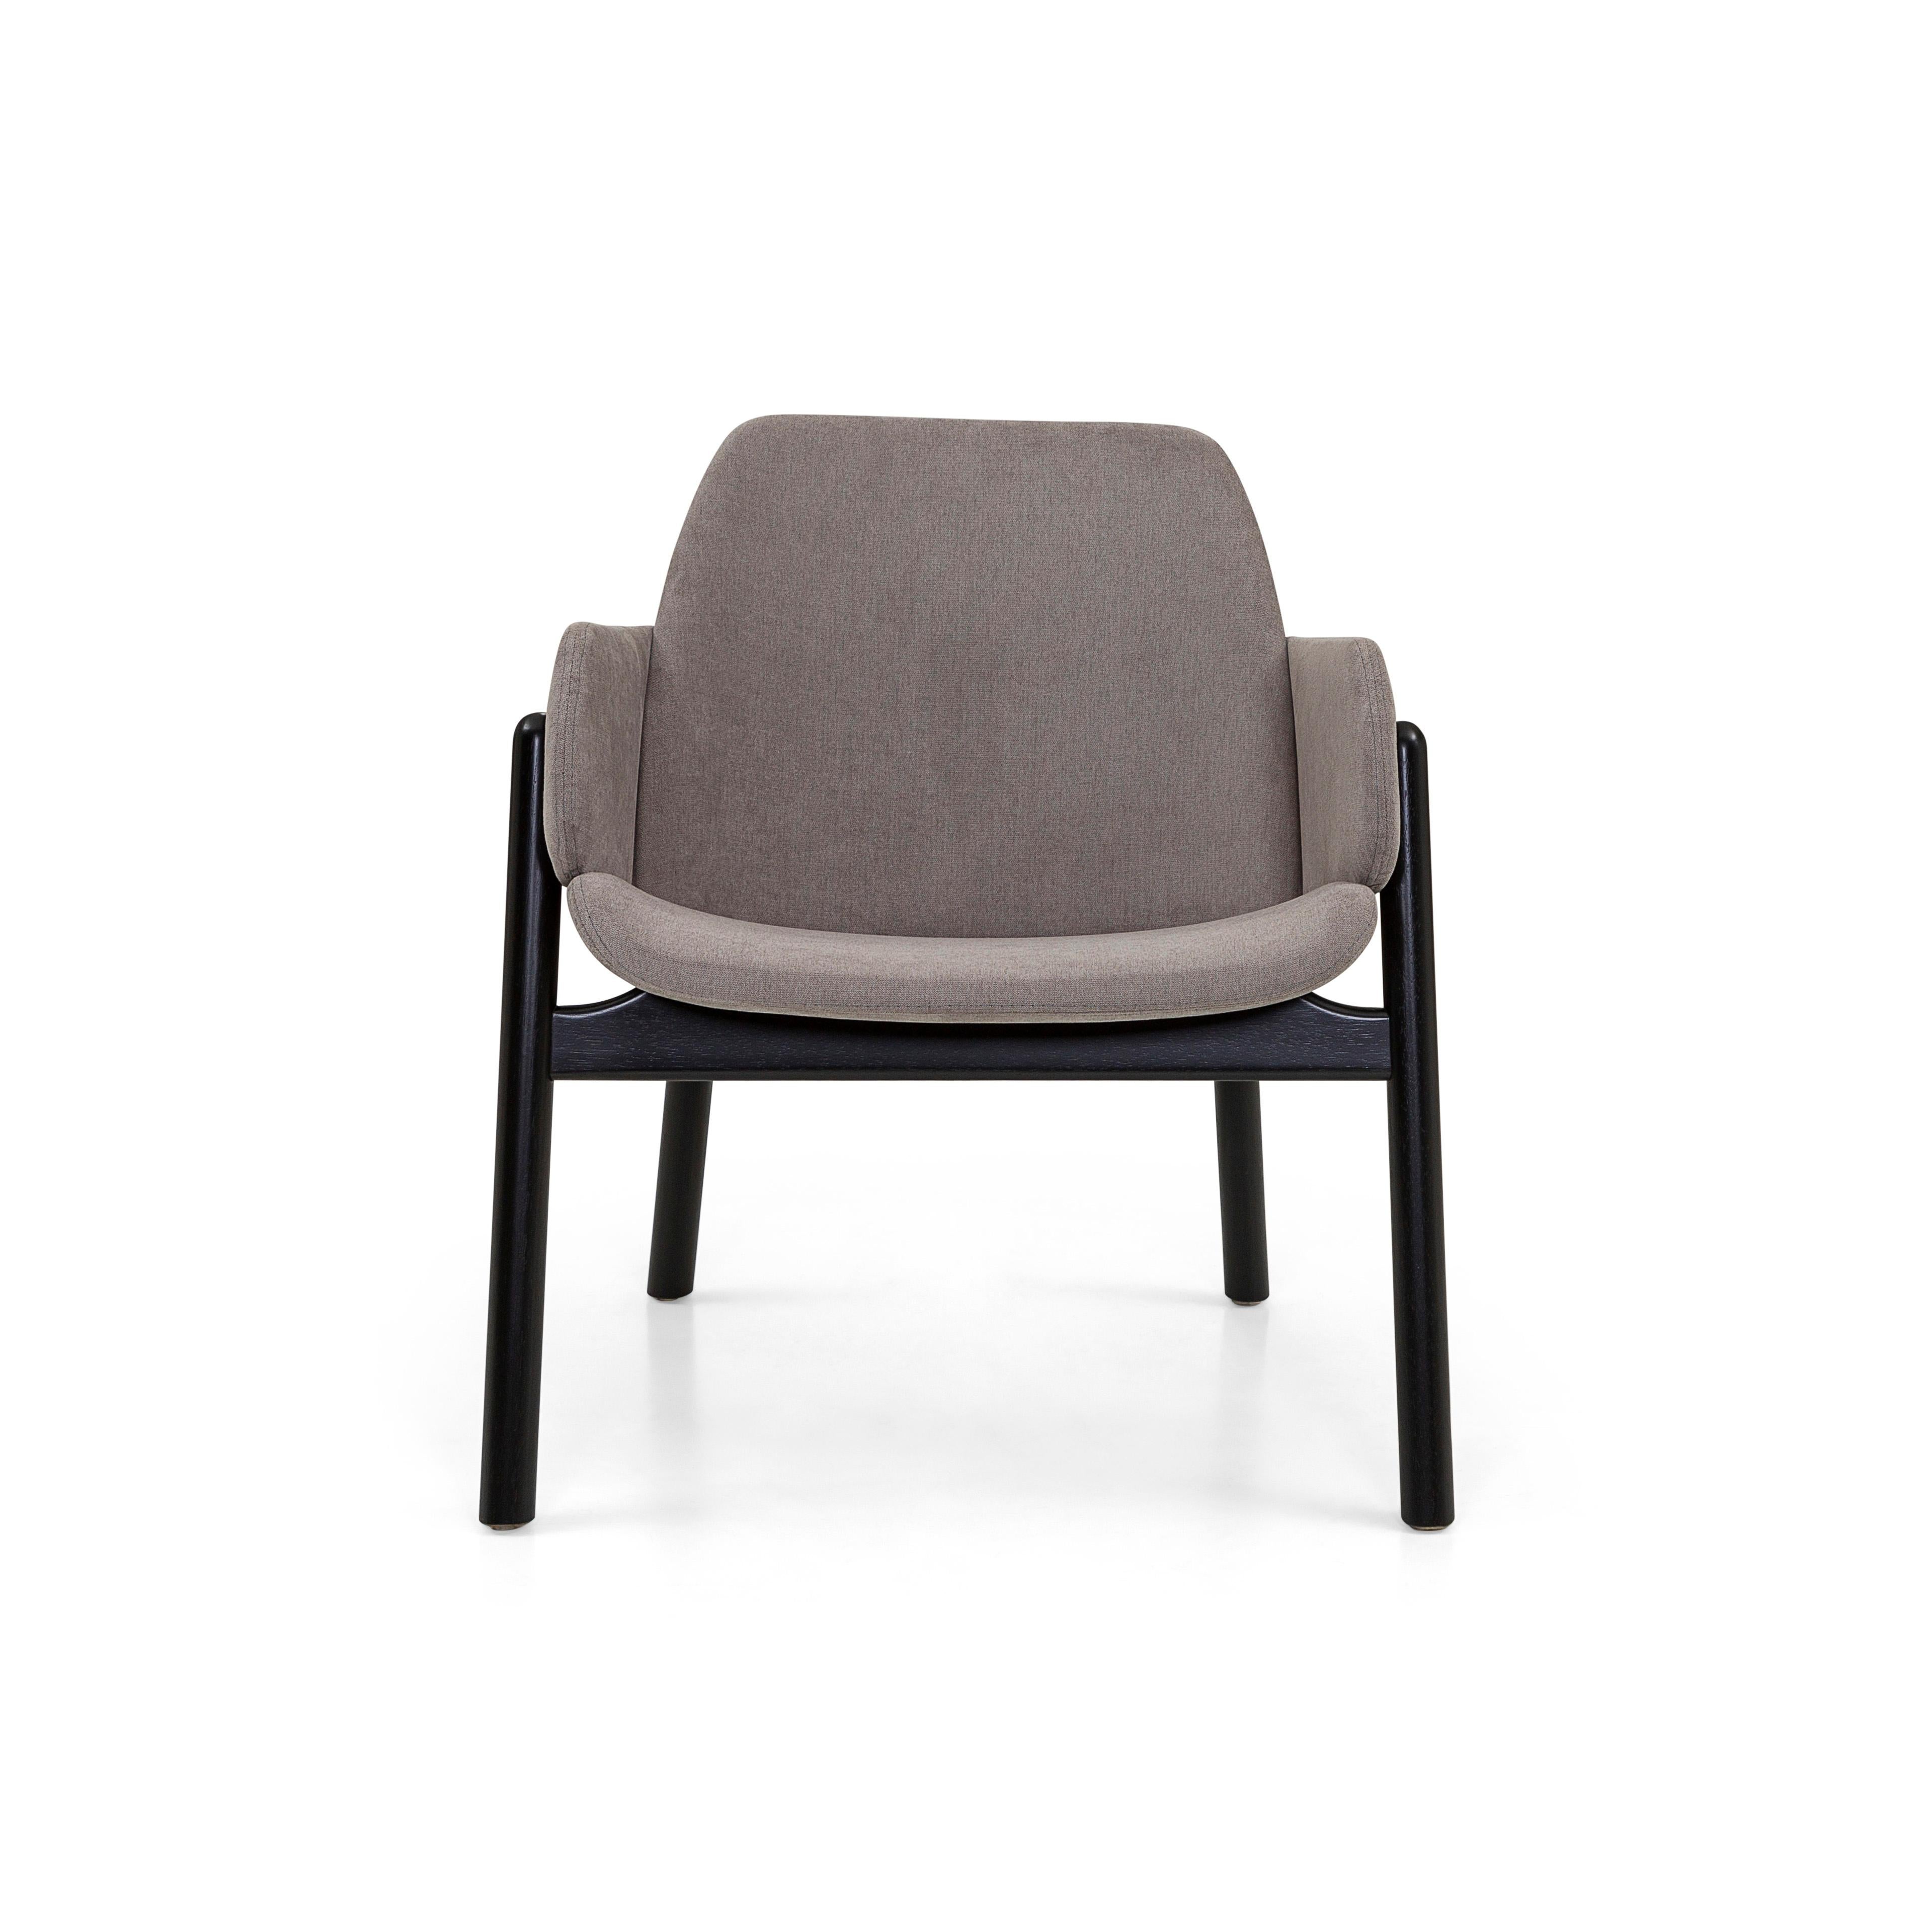 Der oben genannte Stuhl geht in puncto Design und Bequemlichkeit weit darüber hinaus. Die Kombination aus dem grauen Stoff und dem schwarz lackierten Gestell ermöglicht es, den Above Stuhl sowohl in bereits eingerichteten als auch in neu gestalteten